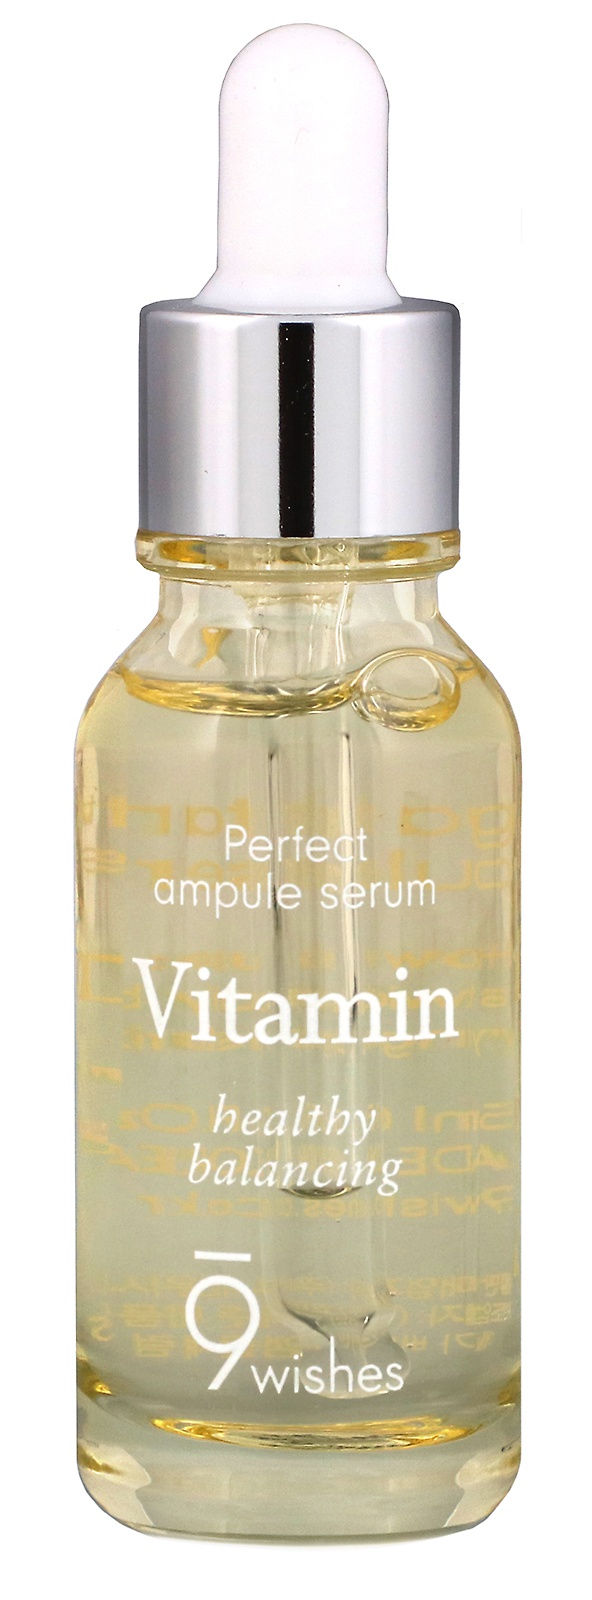 9wishes Ampule Serum, Vitamin